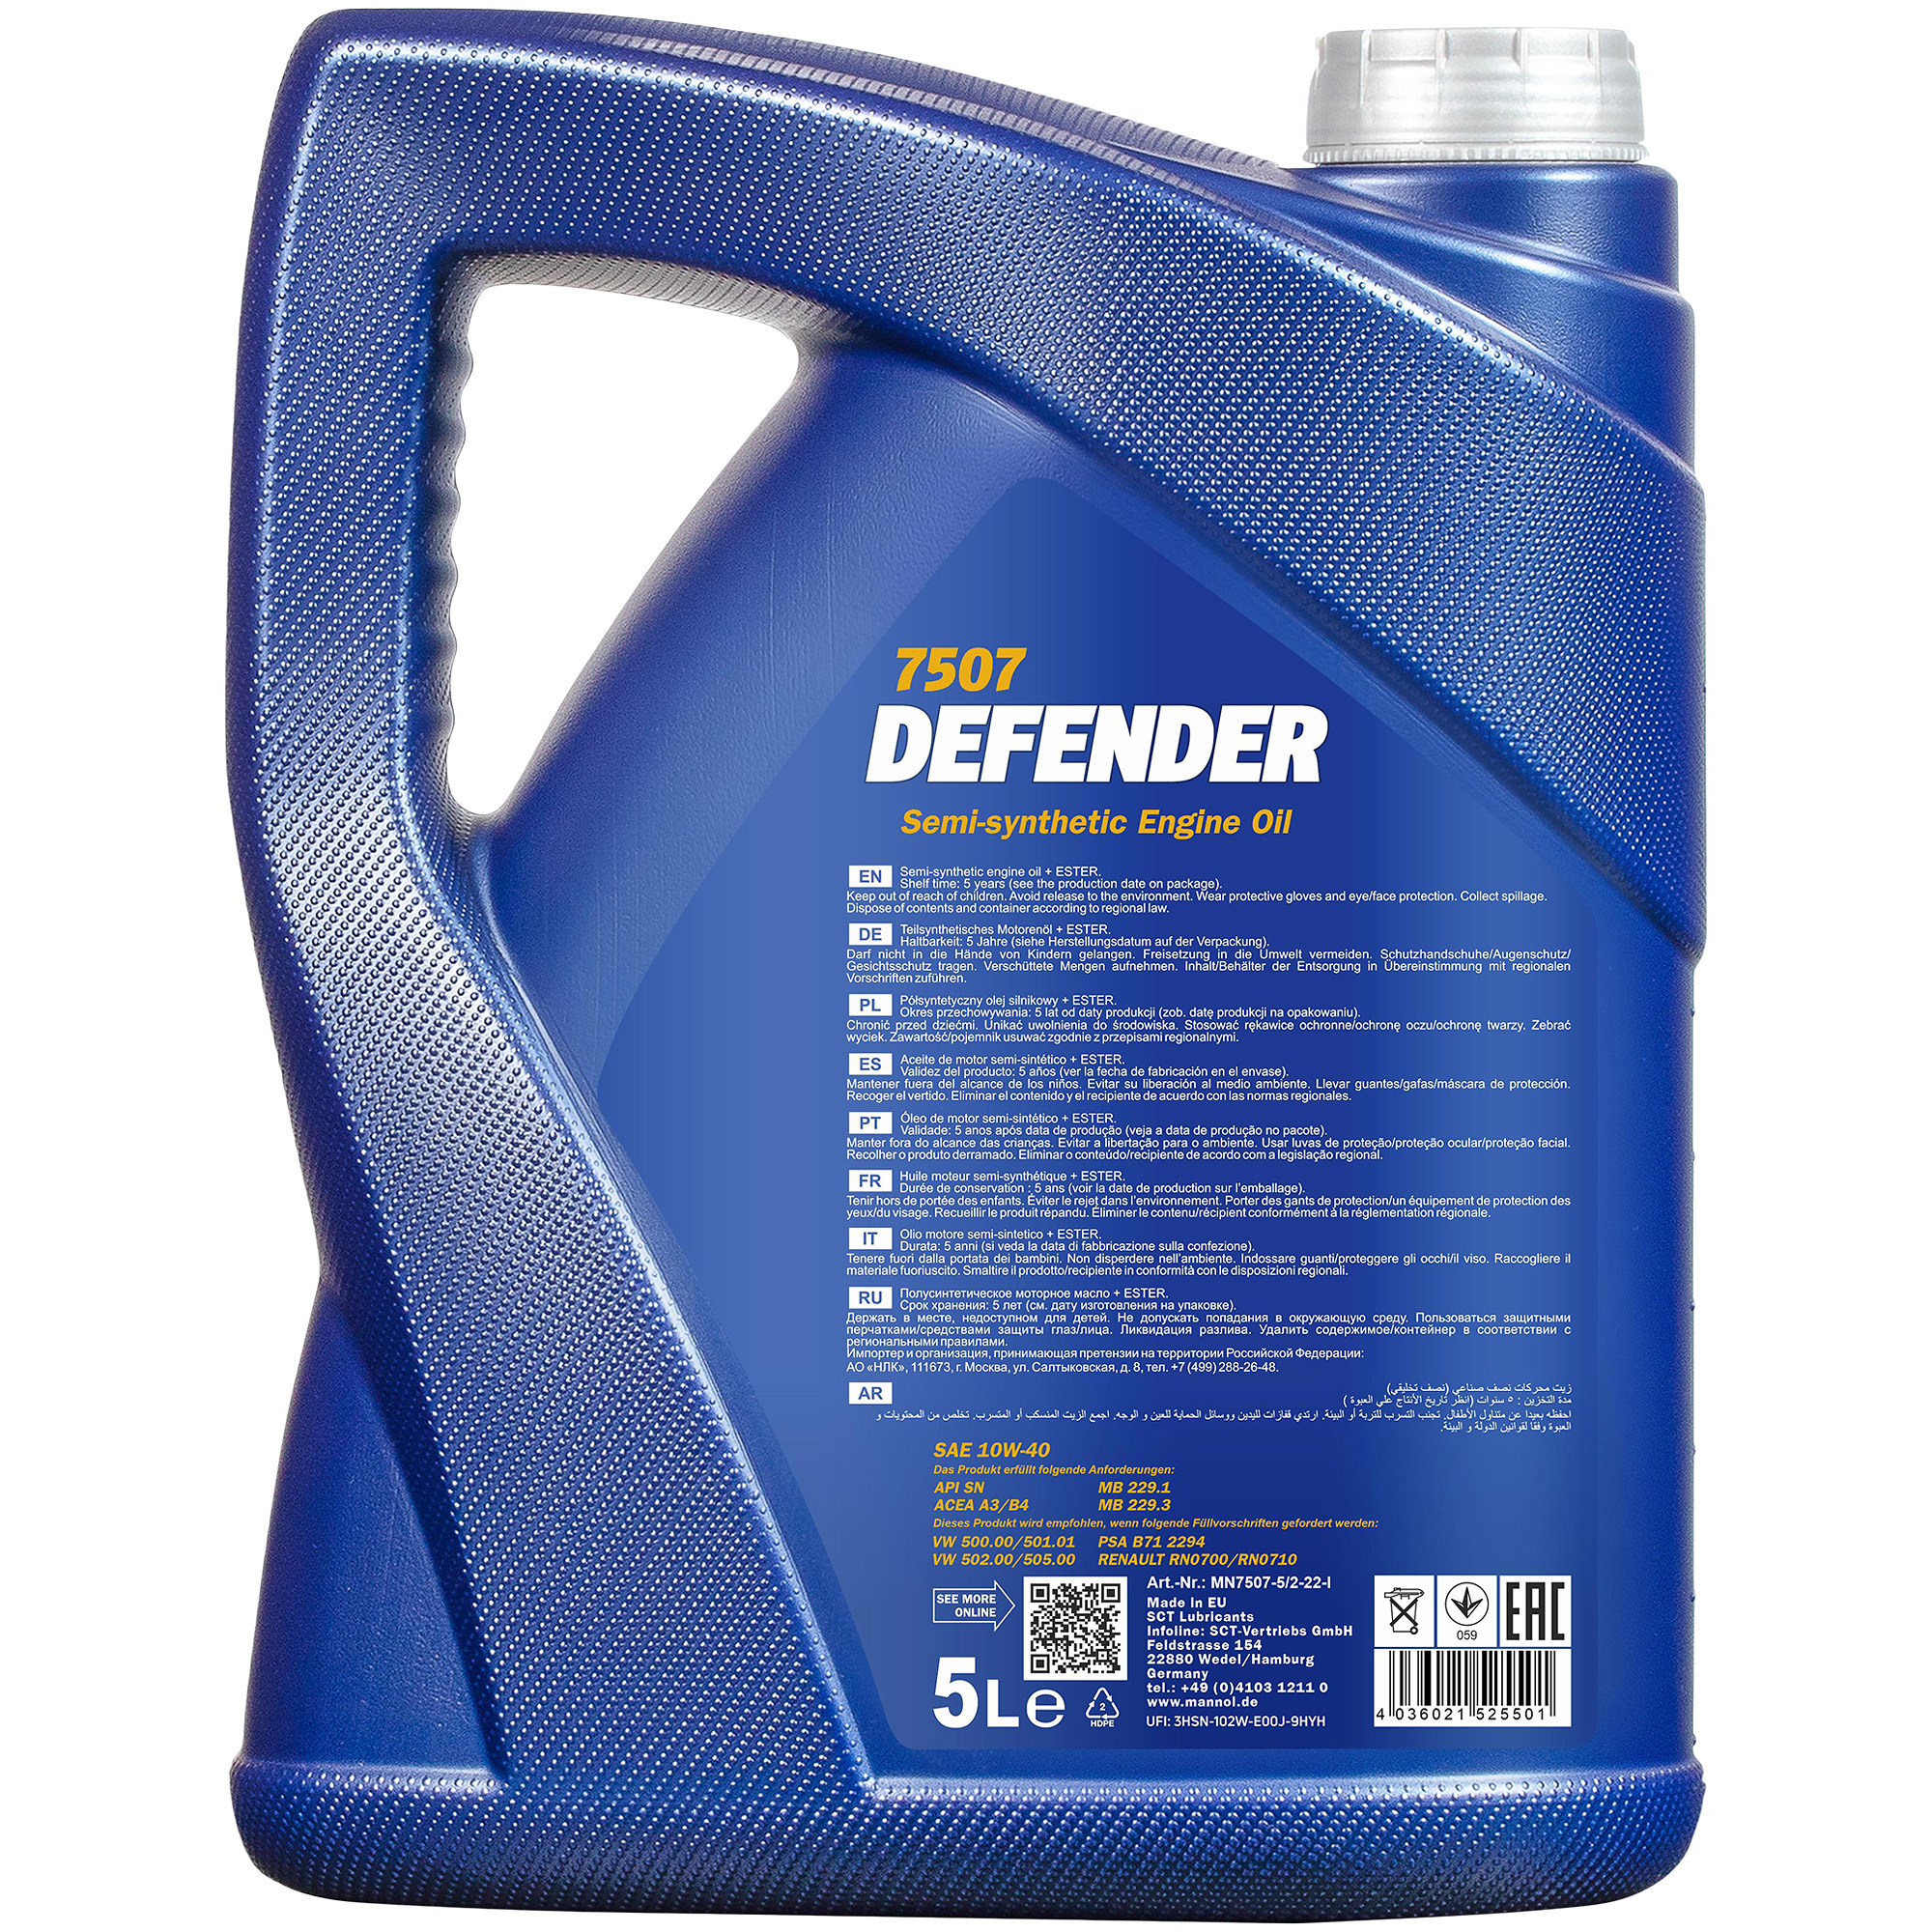 MANNOL 1x5 Liter Defender 10W-40 API SN Öl Motoröl MN7507-5